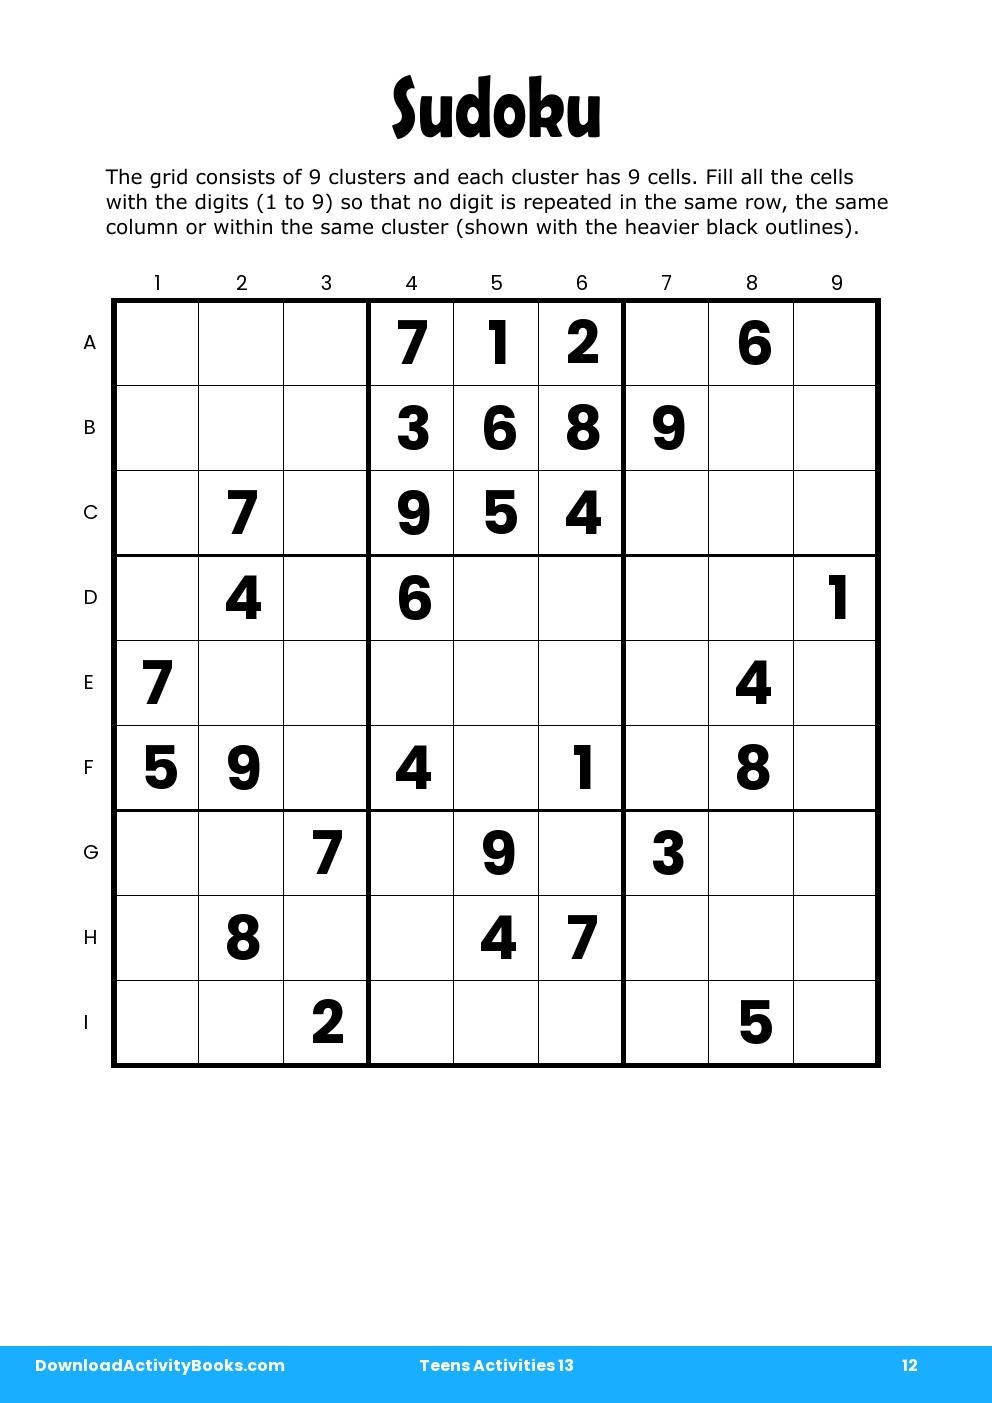 Sudoku in Teens Activities 13